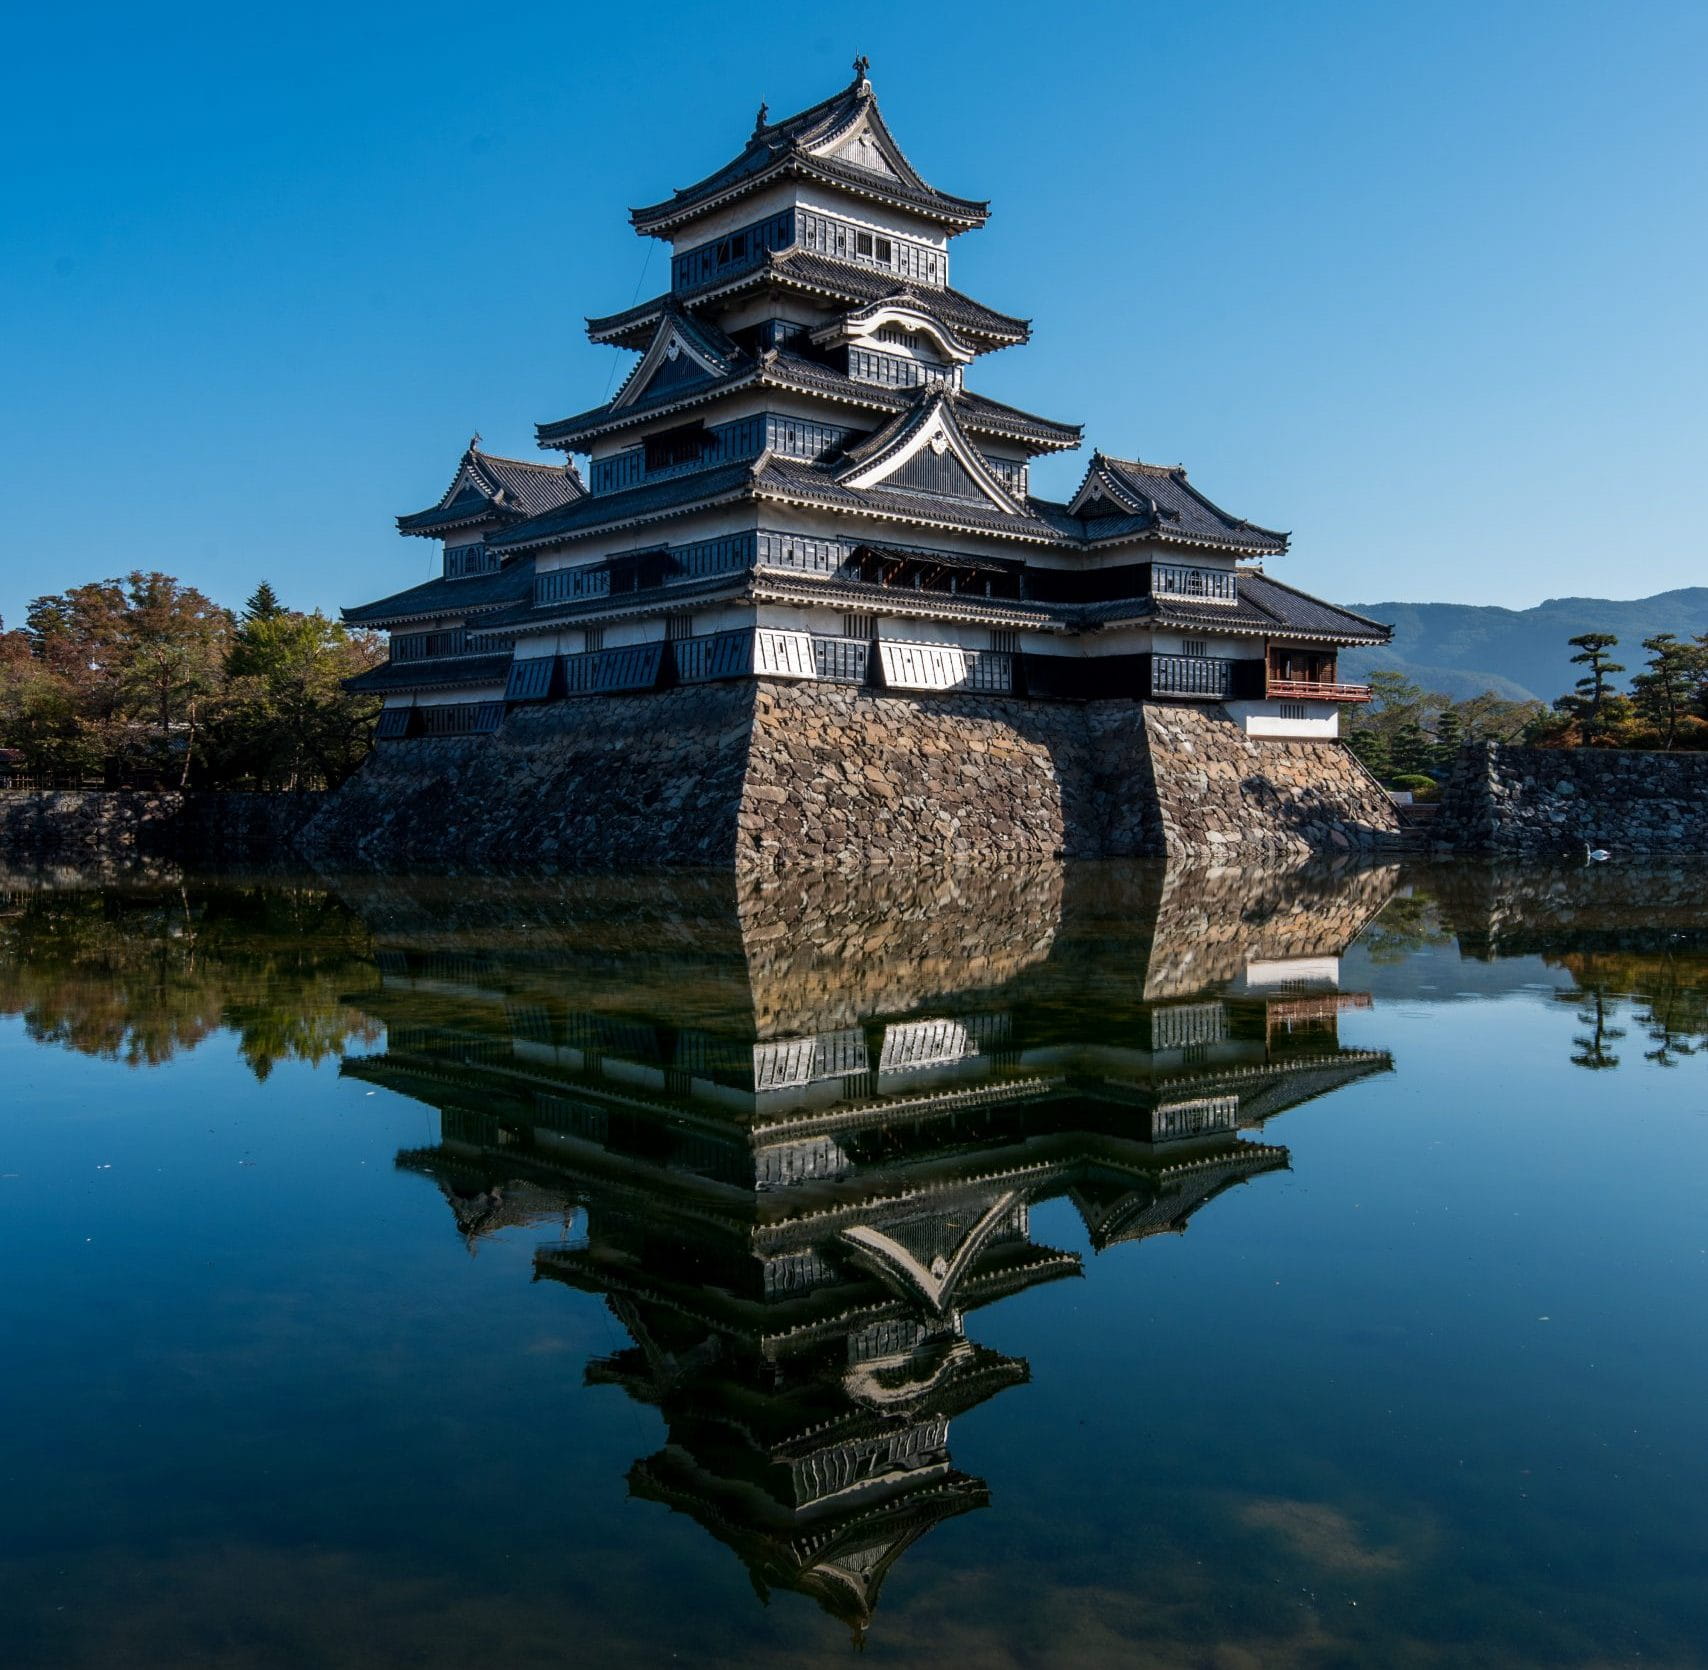 Explore History at Matsumoto Castle